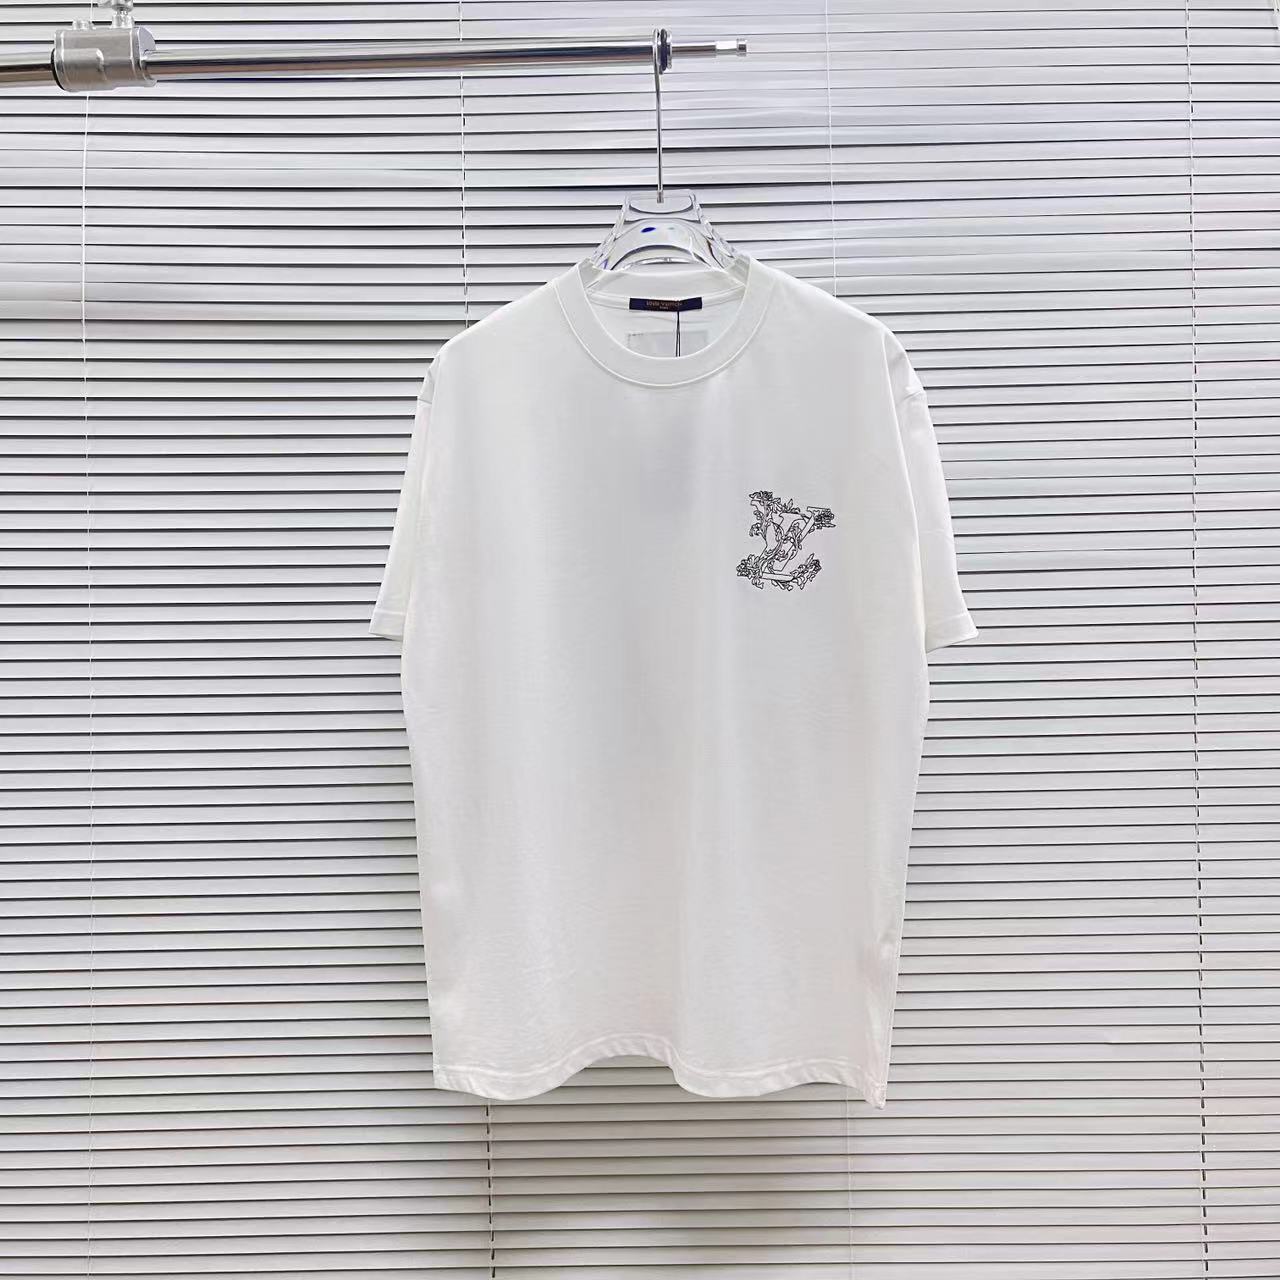 Louis Vuitton Ropa Camiseta Negro Blanco Universal para hombres y mujeres Colección de verano Manga corta